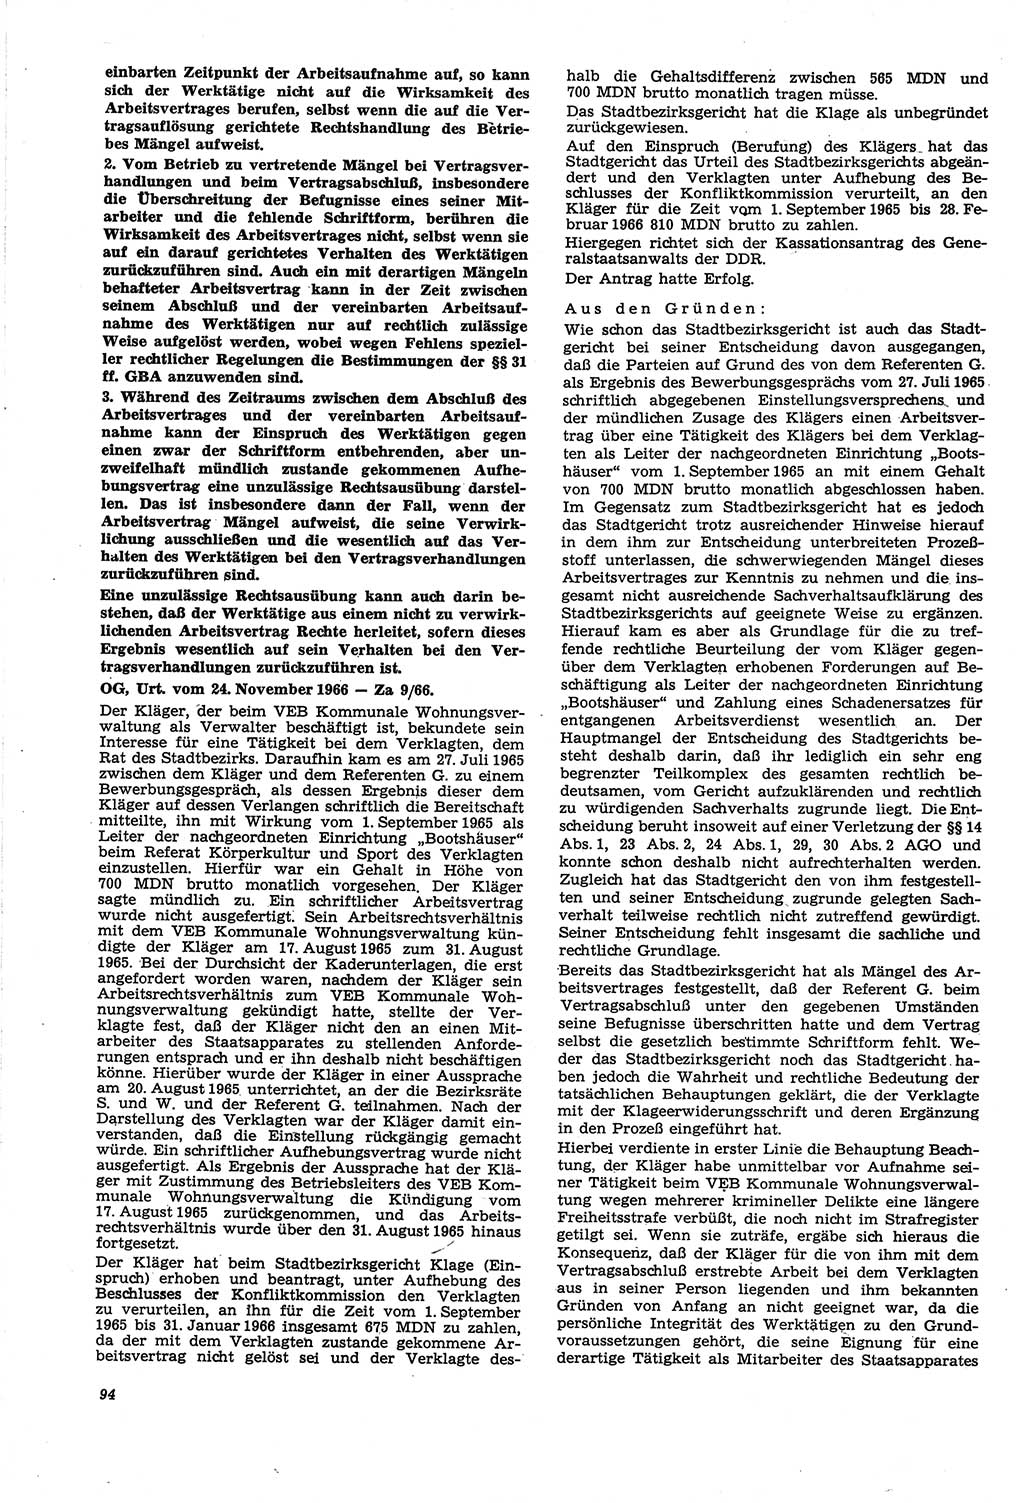 Neue Justiz (NJ), Zeitschrift für Recht und Rechtswissenschaft [Deutsche Demokratische Republik (DDR)], 21. Jahrgang 1967, Seite 94 (NJ DDR 1967, S. 94)